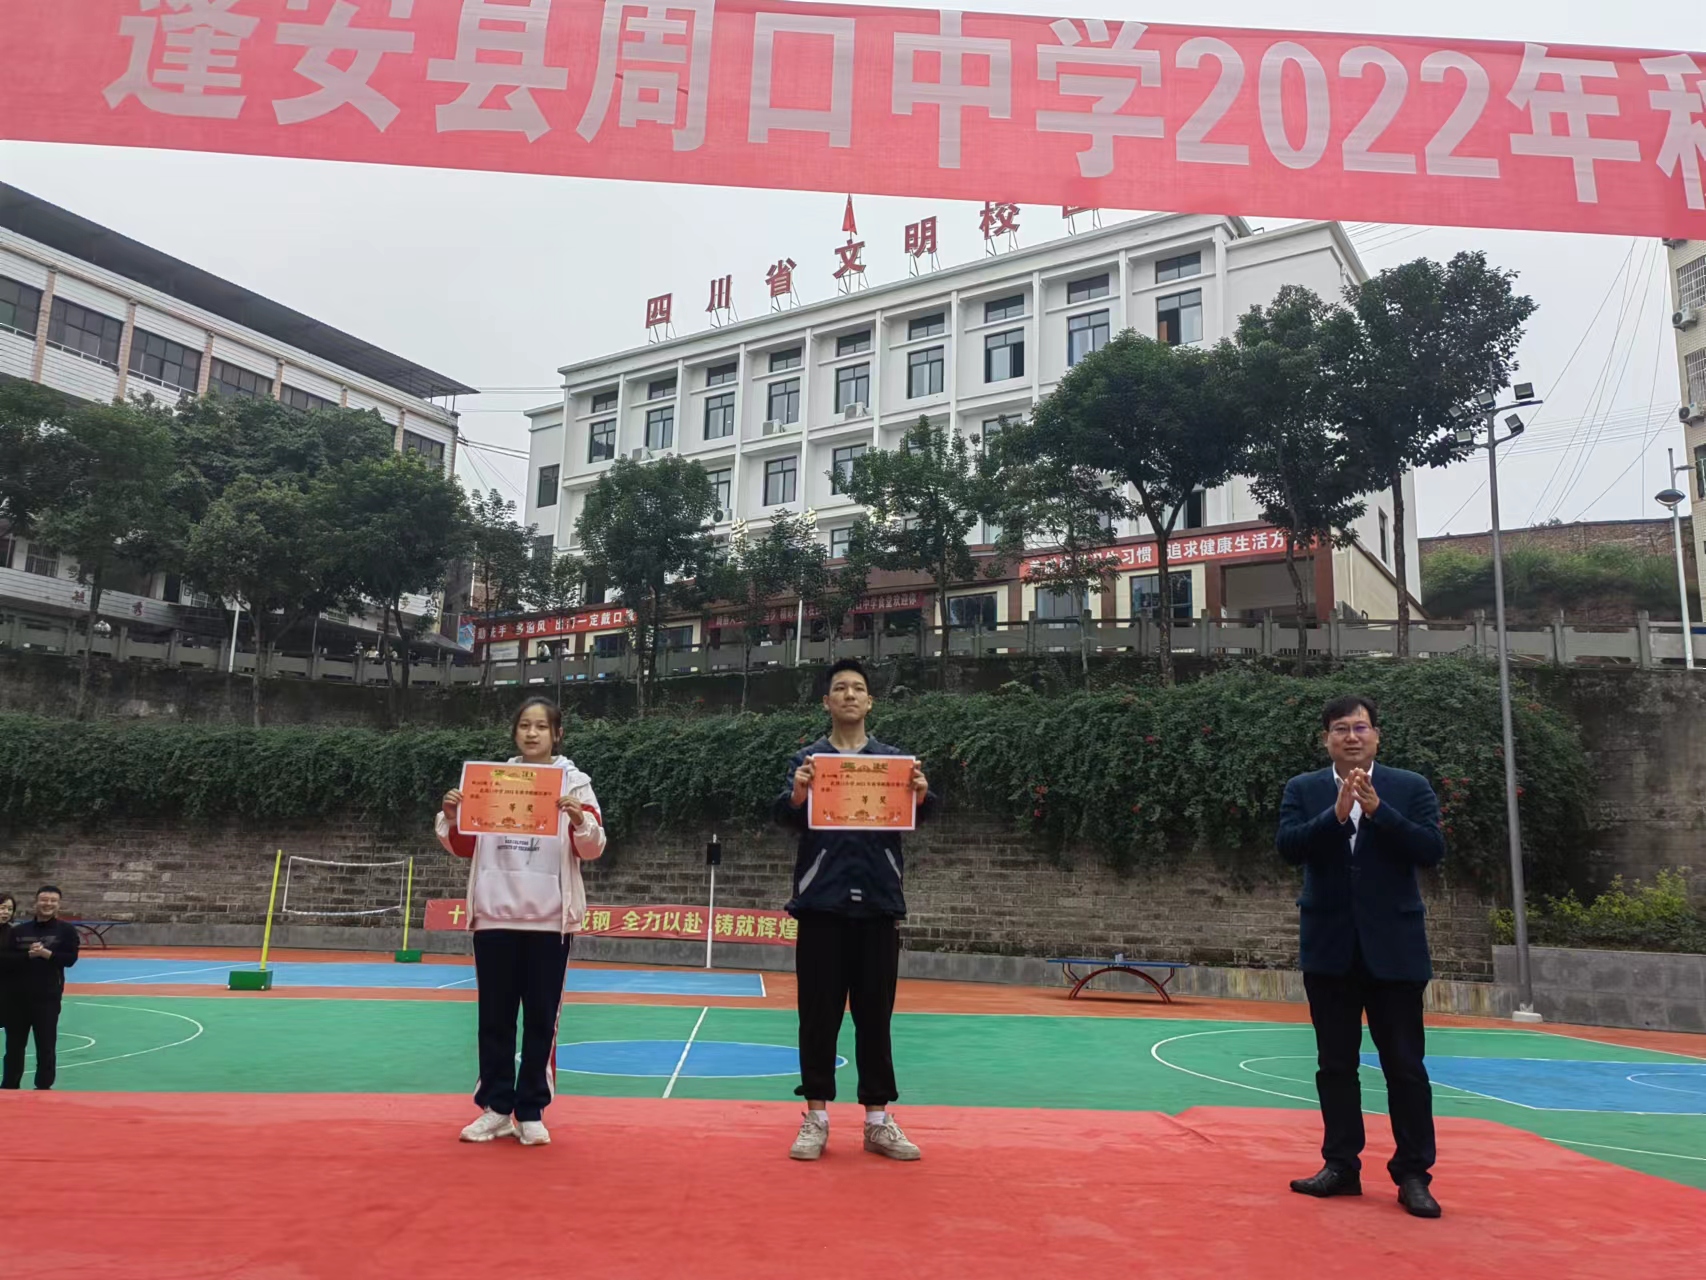 蓬安县周口中学:跑操大赛展风采,自信阔步向未来